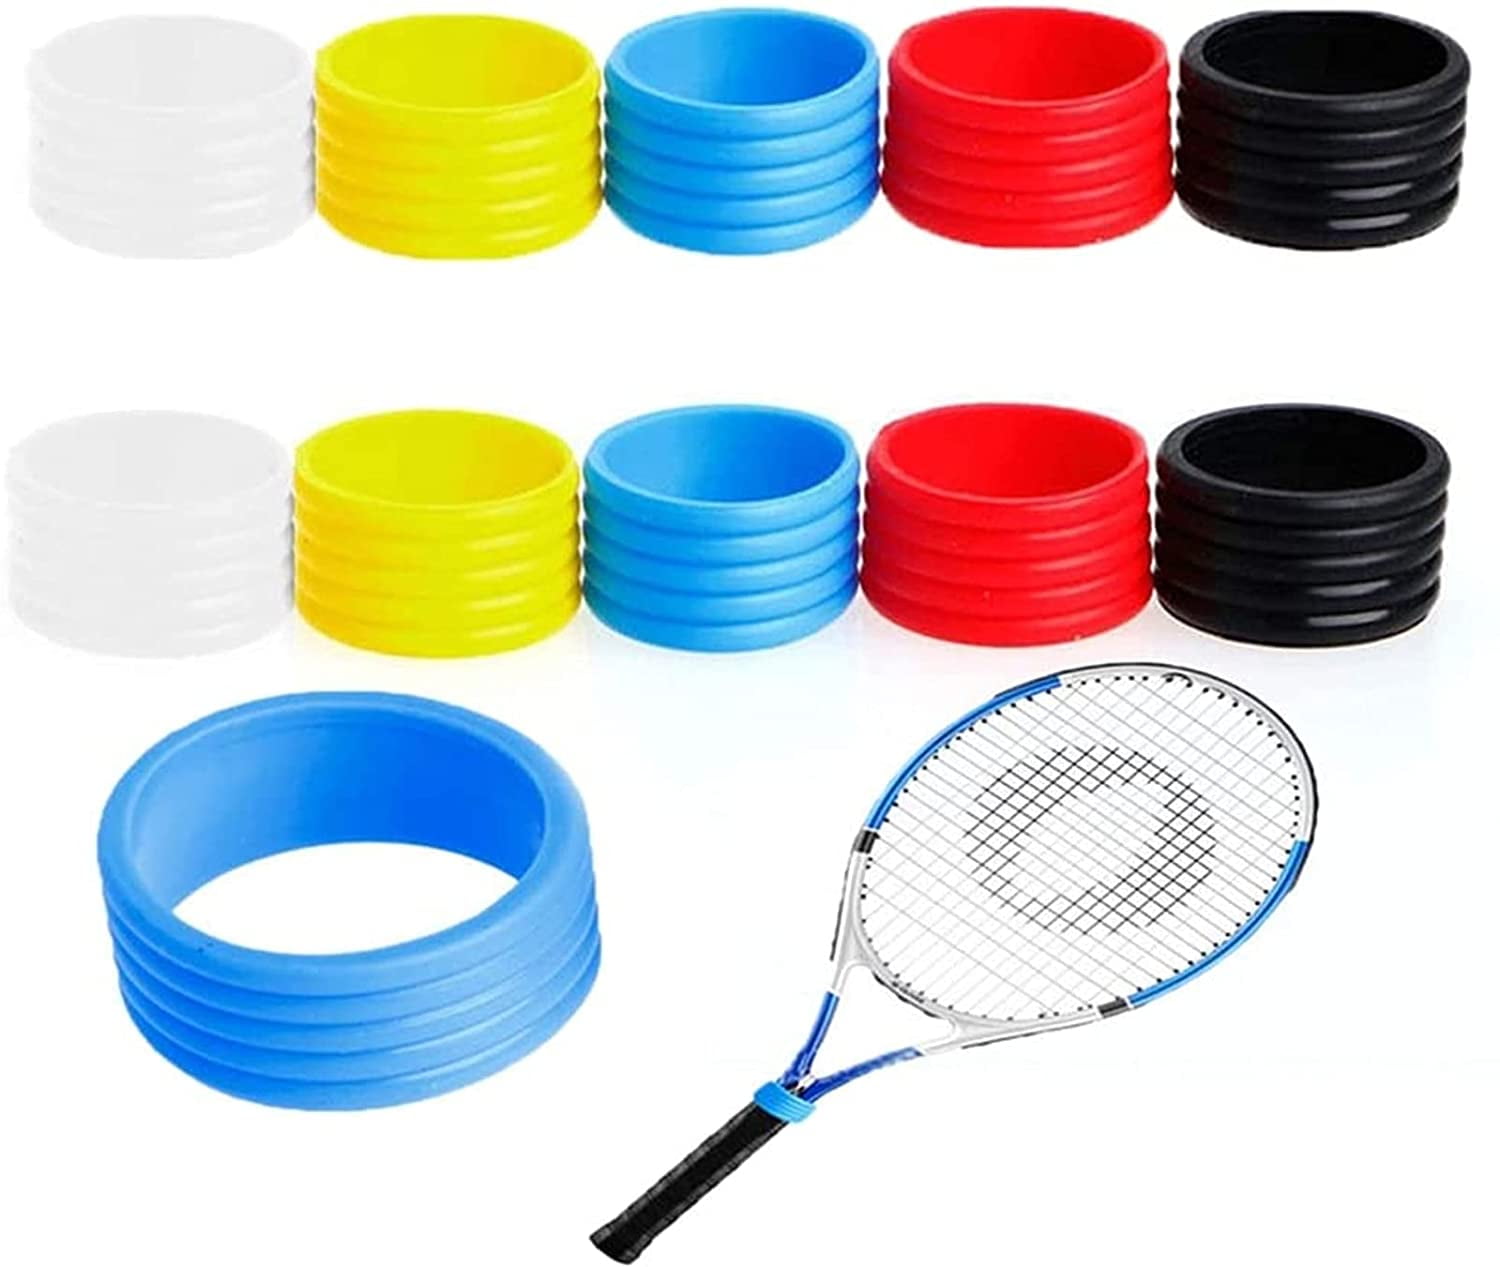 10PCS Anti-slip Over Grip Tape Tennis Badminton Squash Racquet Handle